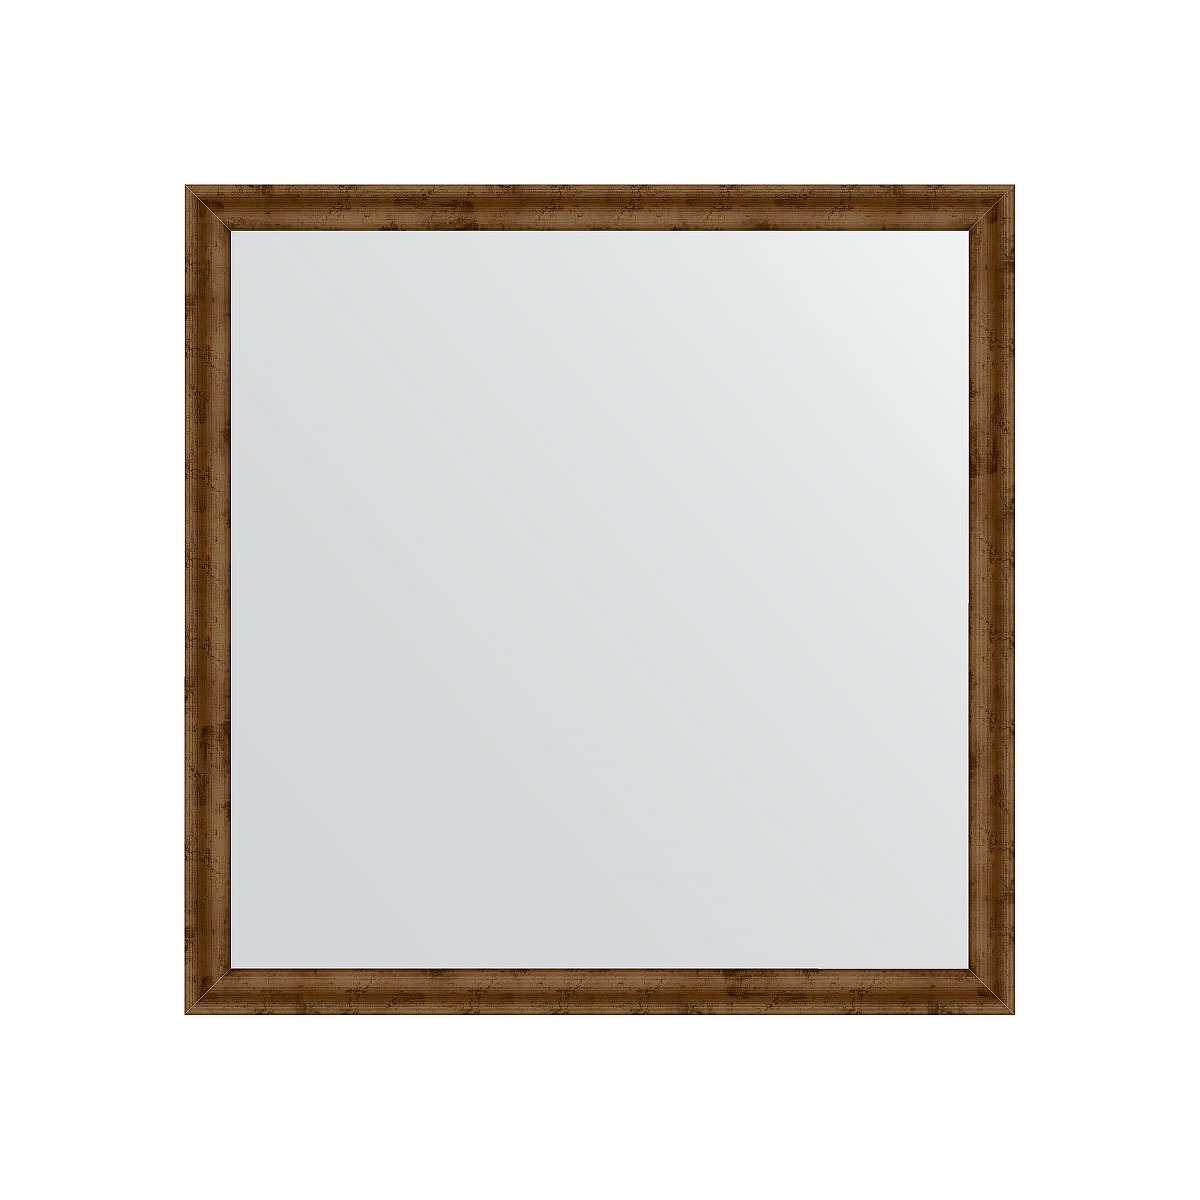 Зеркало в багетной раме Evoform красная бронза 37 мм 70х70 см зеркало evoform в багетной раме 70х70см bx 0662 bx 0662